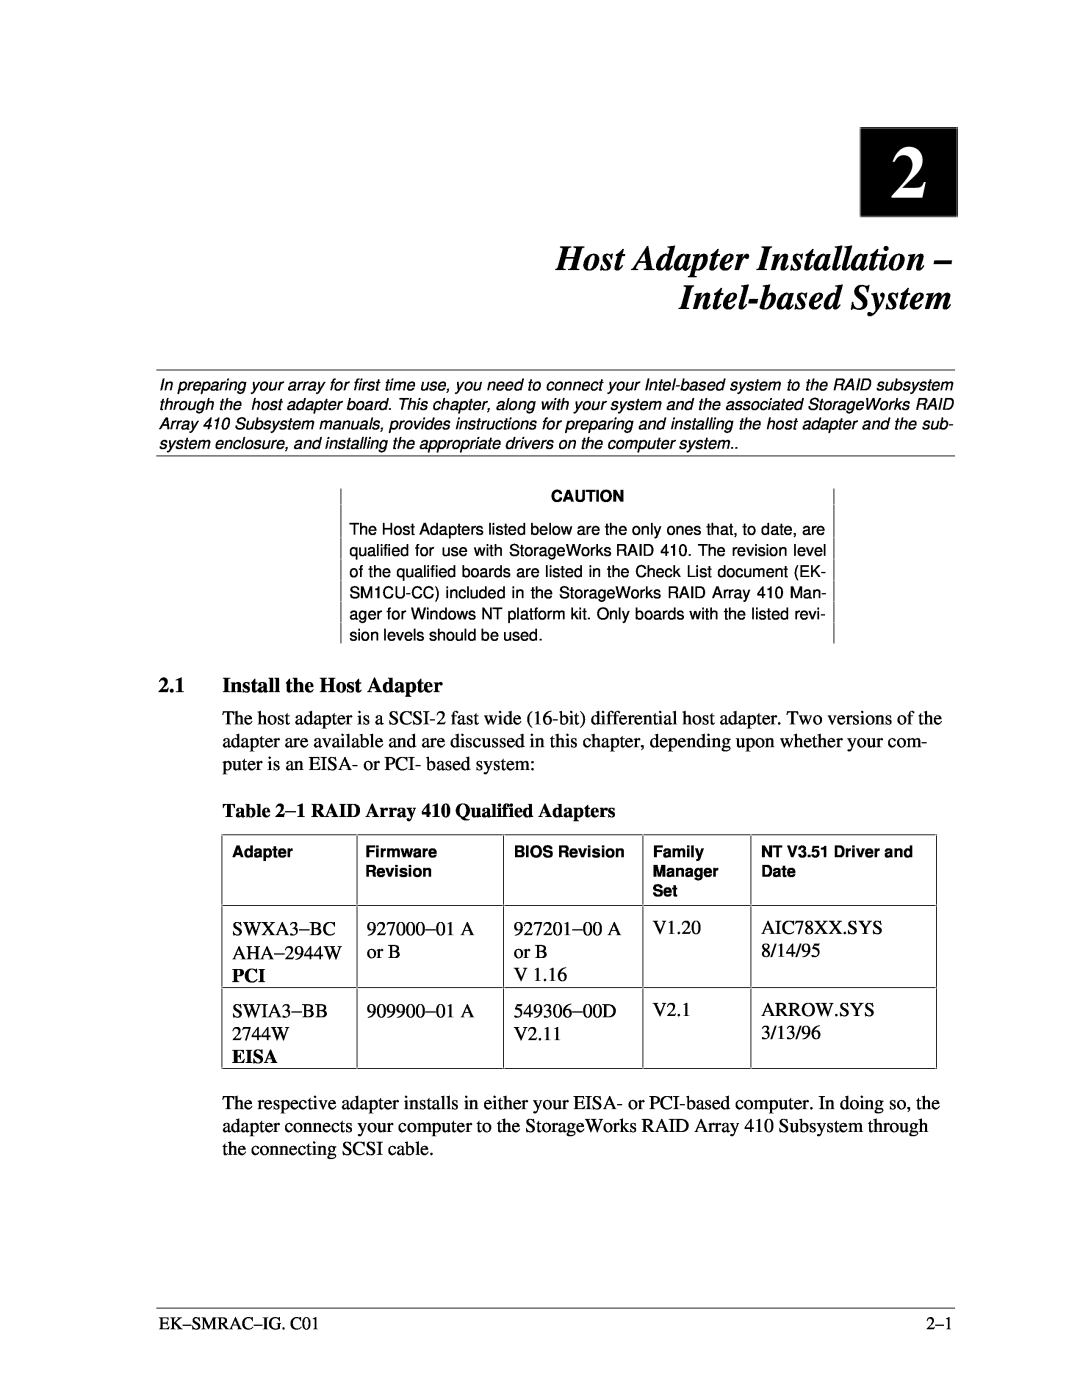 Intel 410 manual Host Adapter Installation – Intel-basedSystem, 2.1Install the Host Adapter 